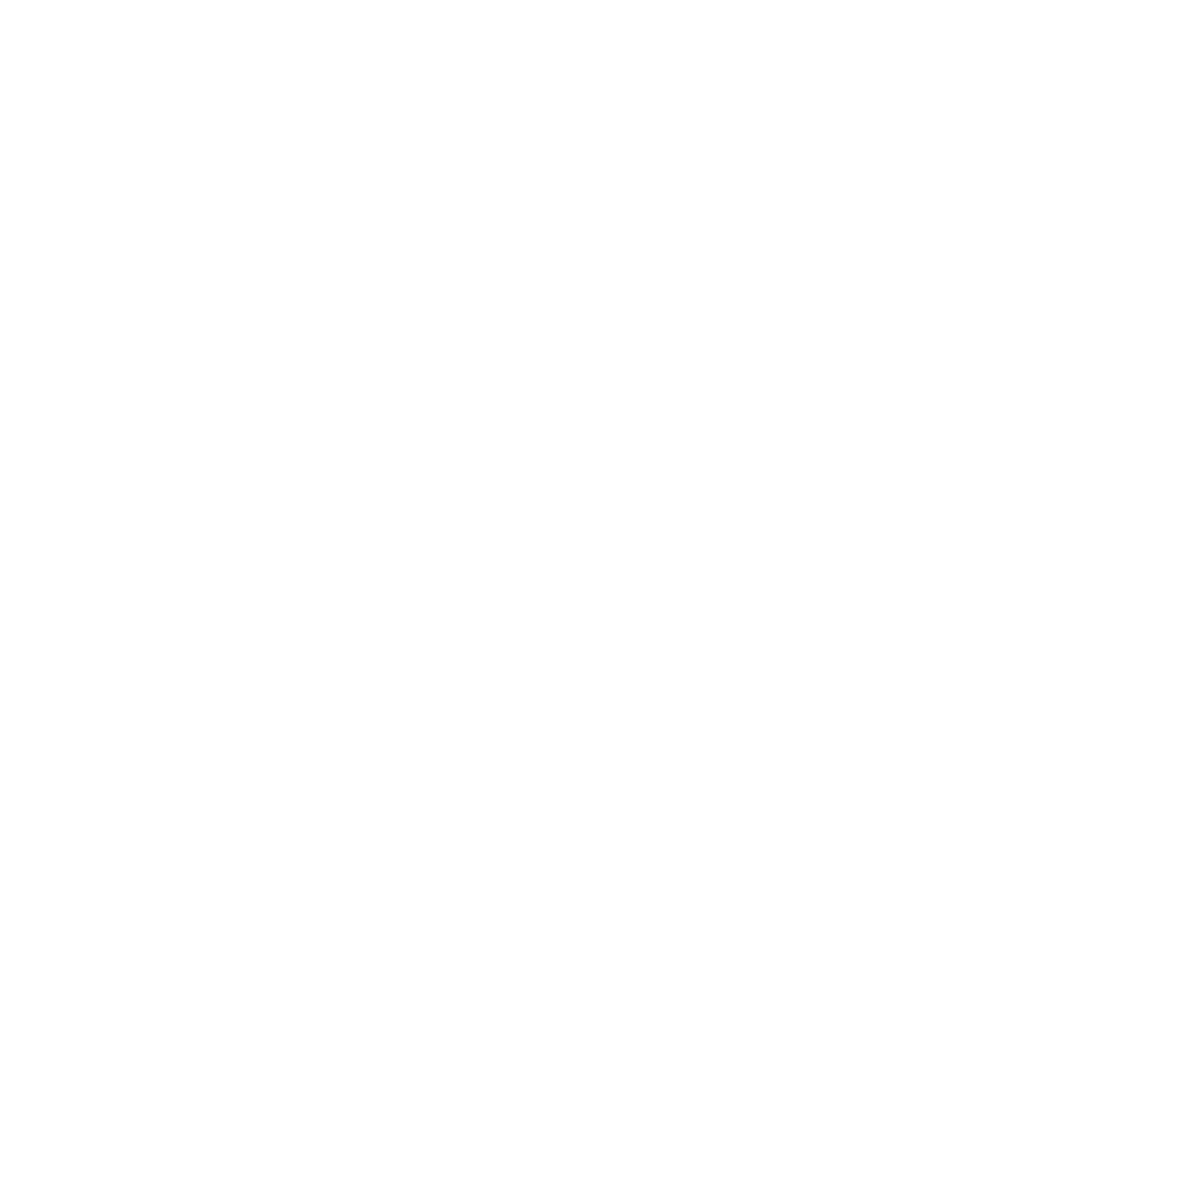 Icon representing new ideas